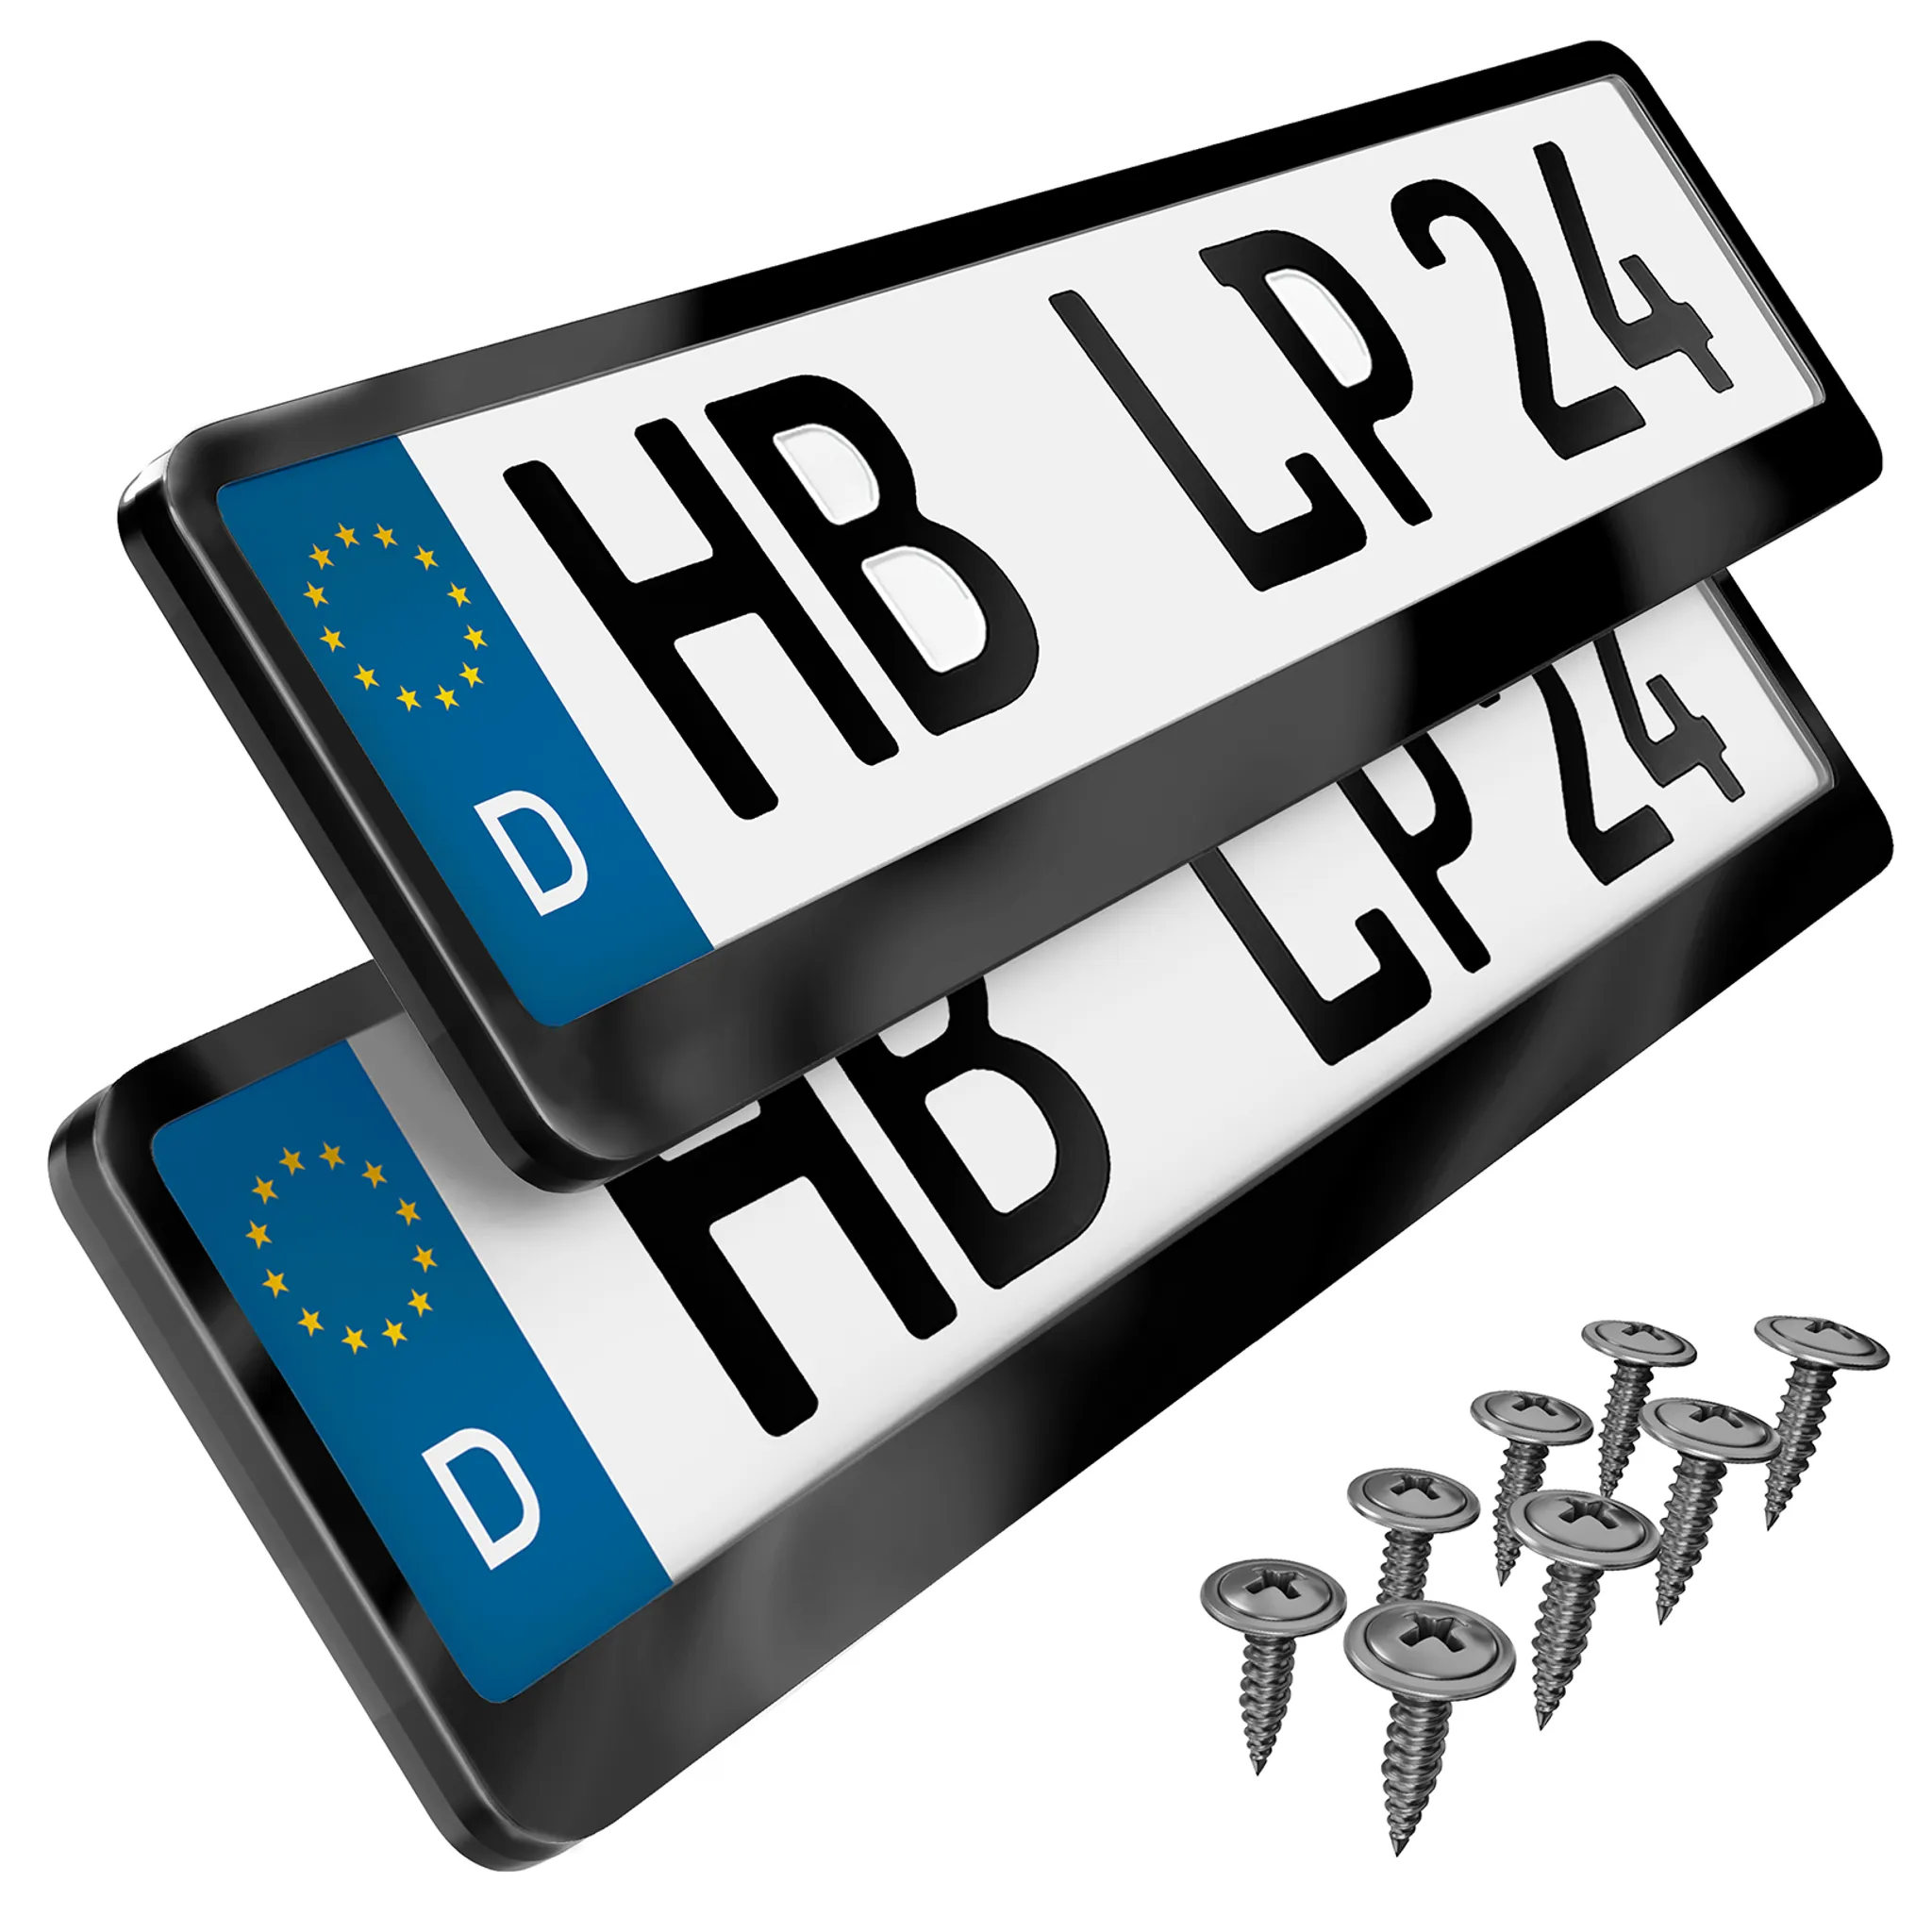 L & P Car Design Kennzeichenhalter für Auto in Chrom Vollchrom Kennzeichenhalterung  Halter, (2 Stück)